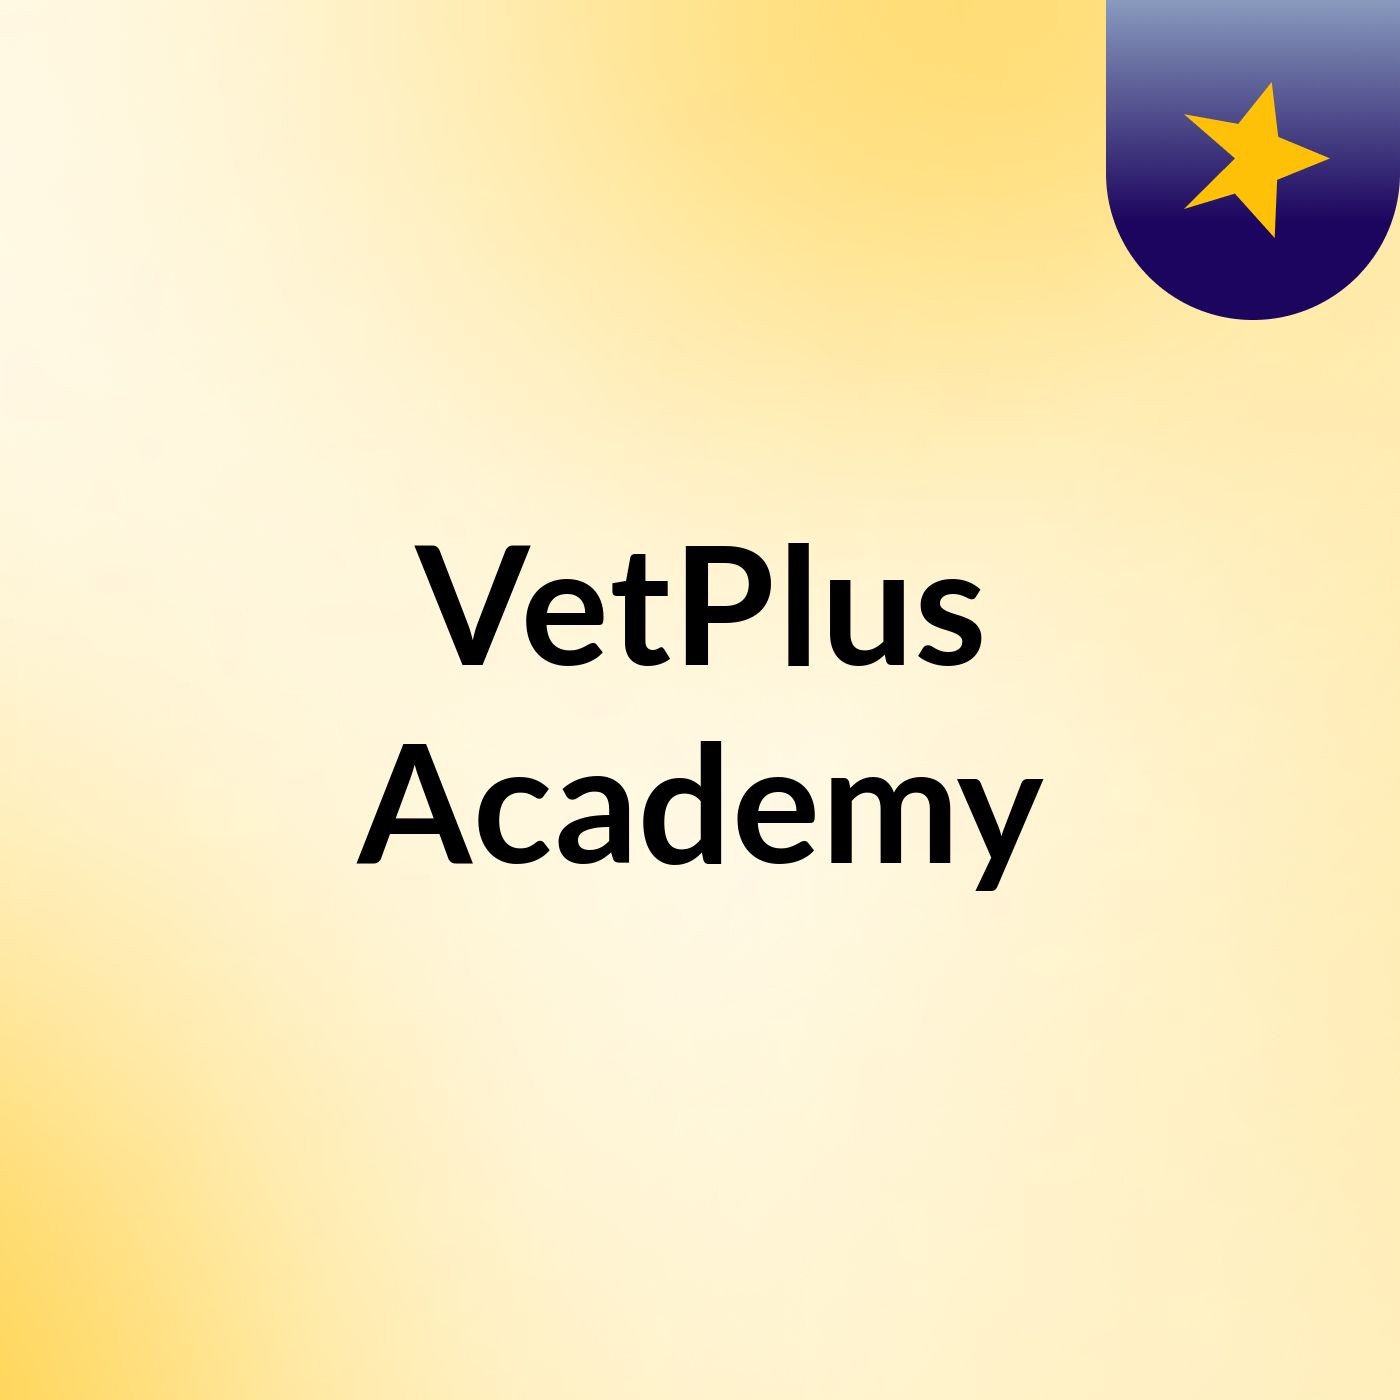 VetPlus Academy